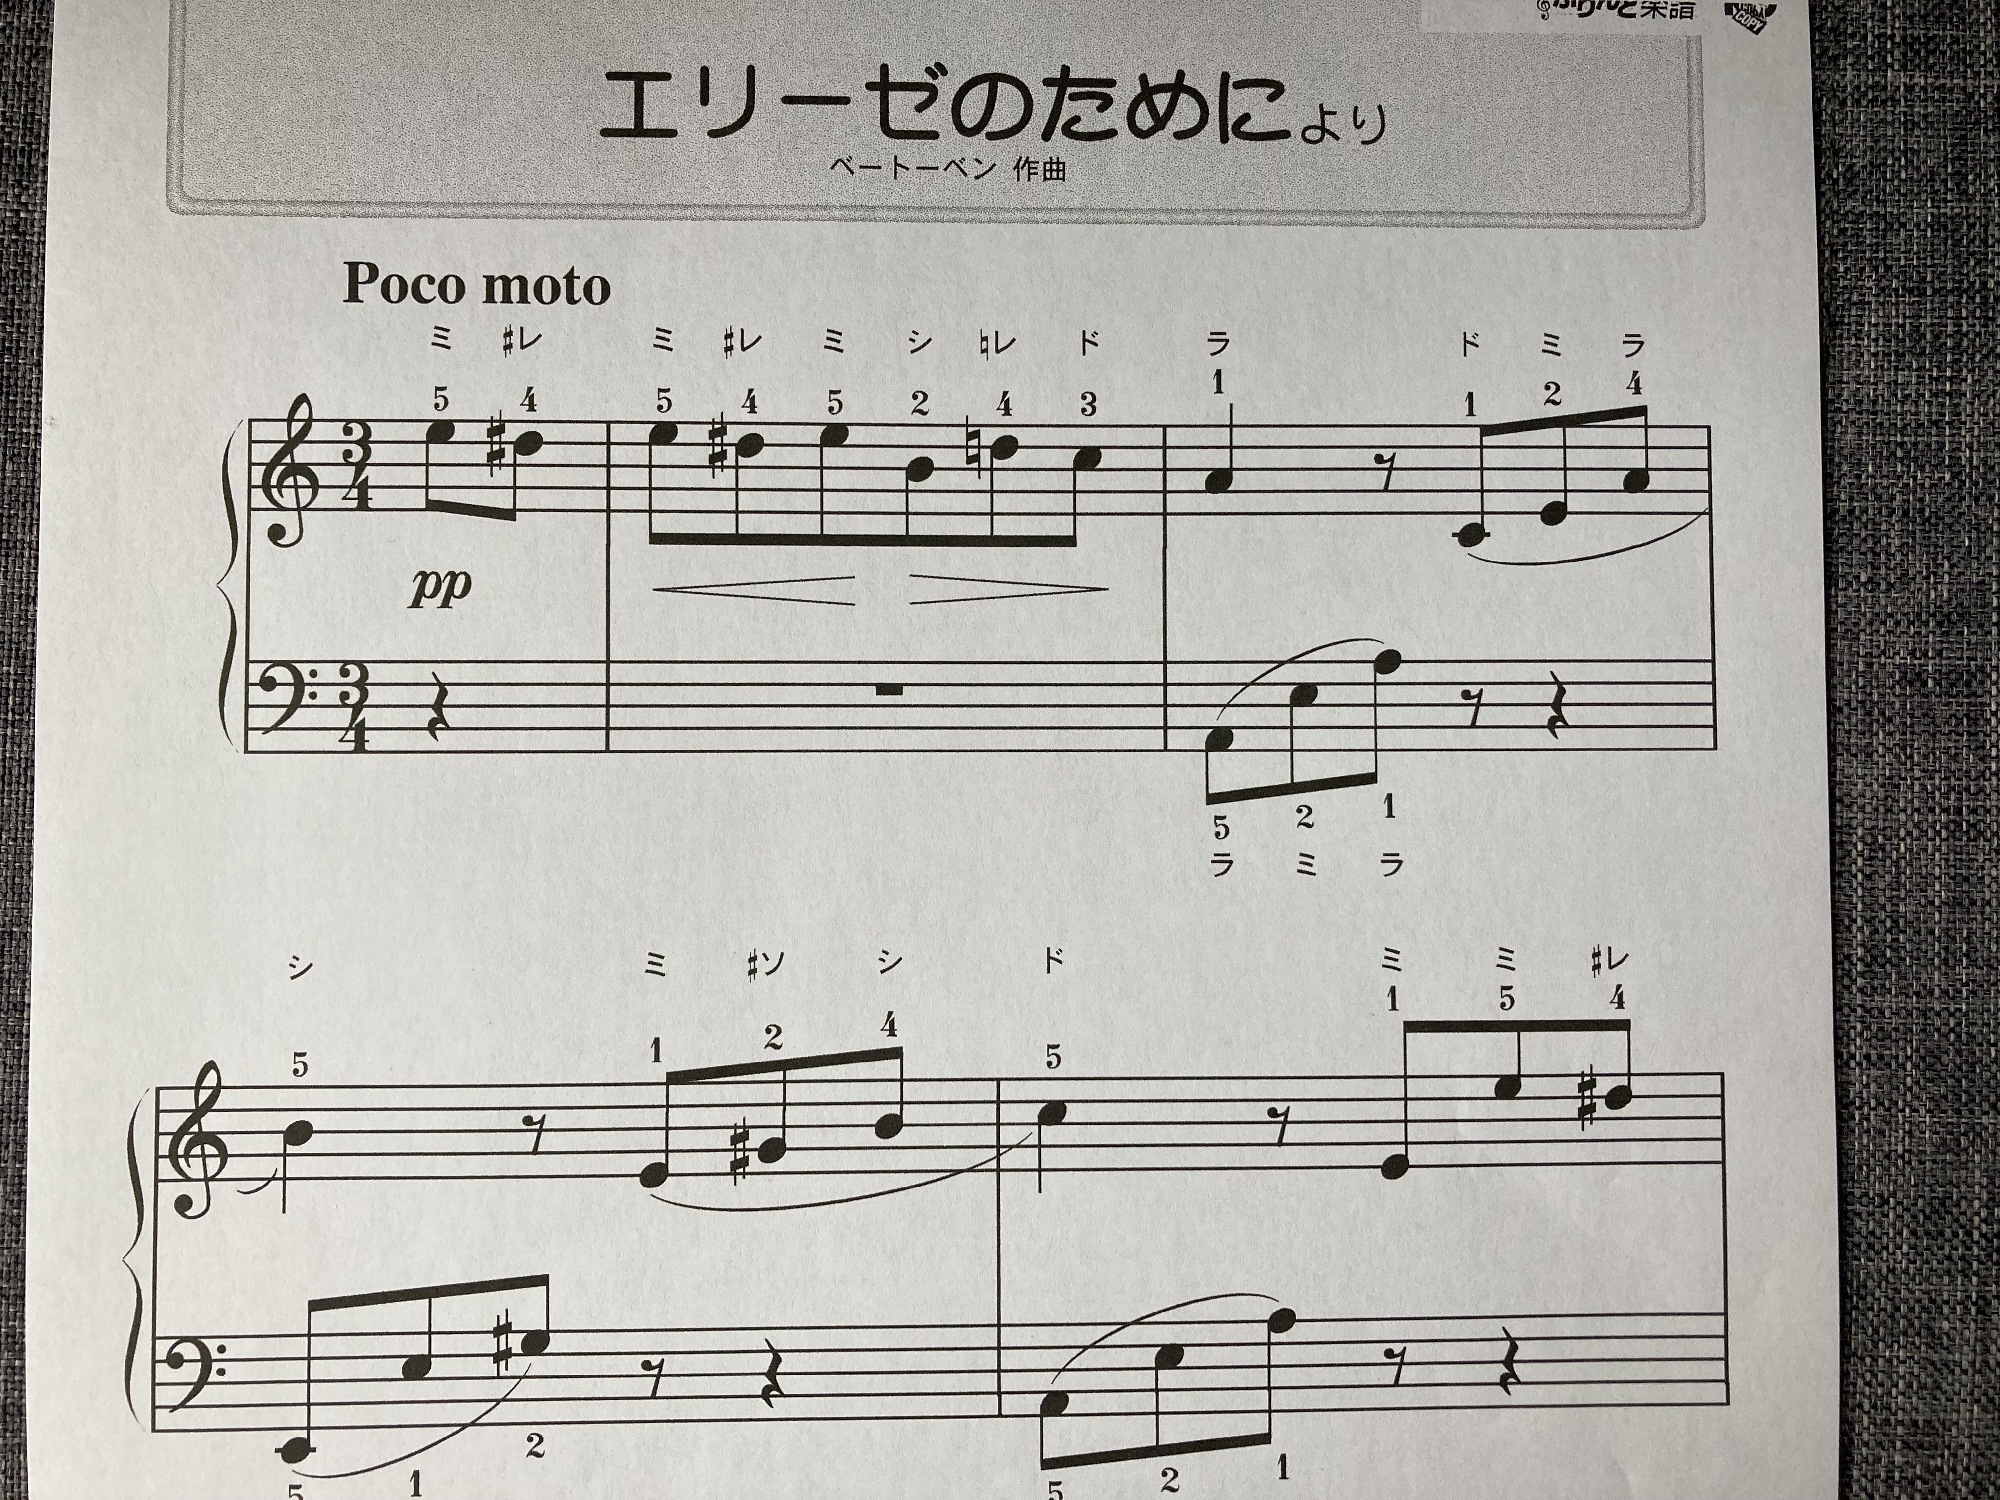 エリーゼのためにを1ヶ月で弾けるようになった中学生ピアノ初心者 音楽指導 吉岡裕美 マイベストプロ熊本